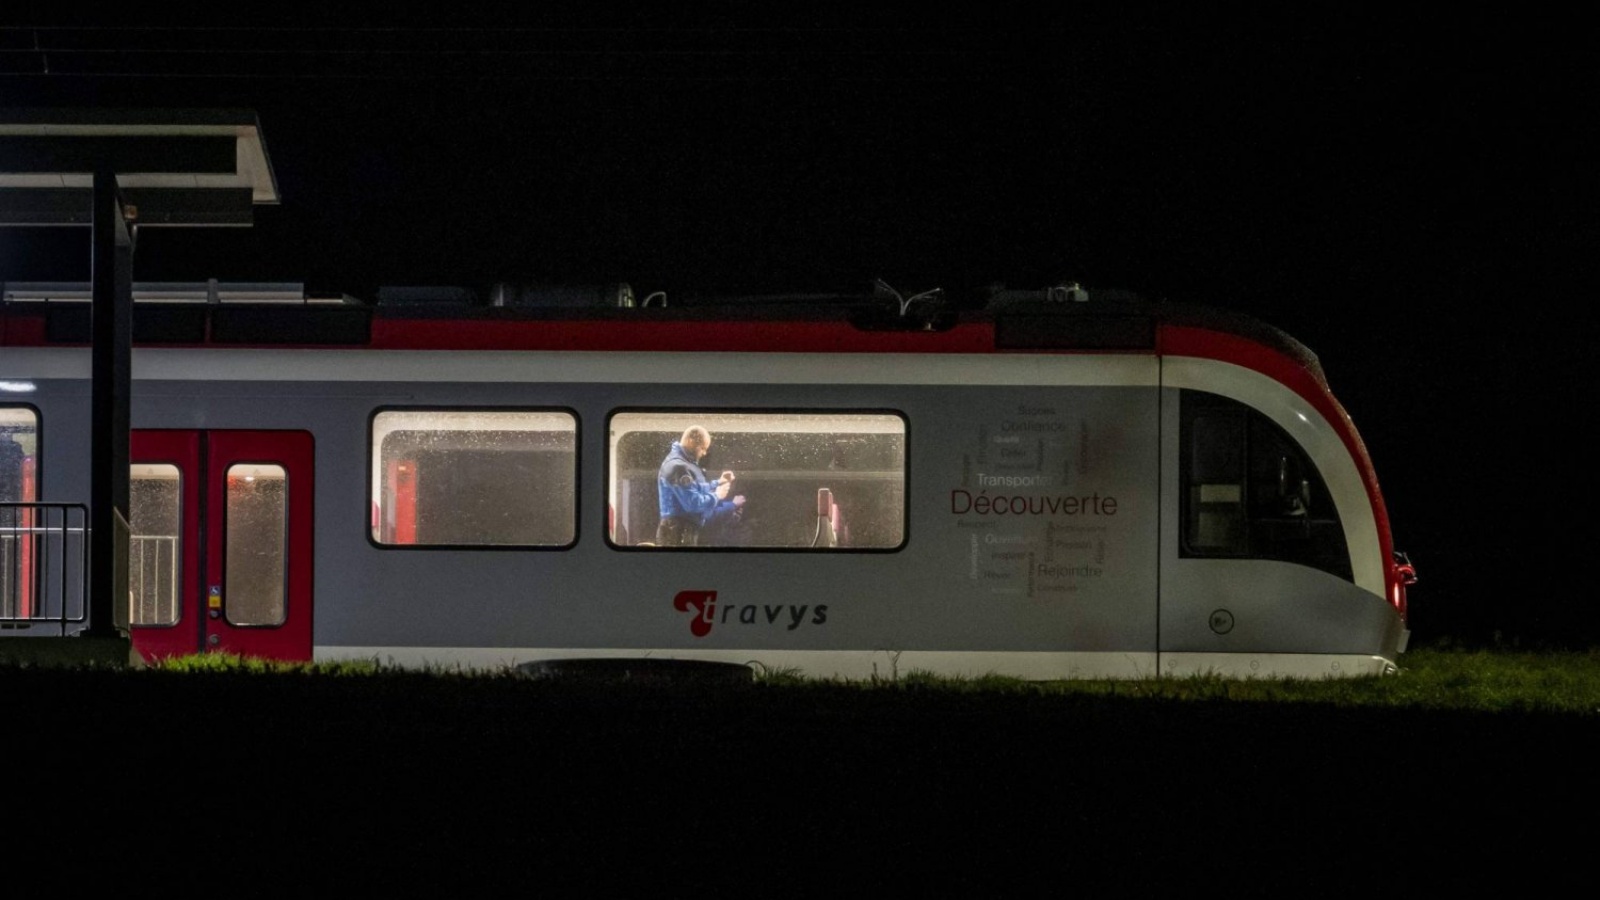 ضابط شرطة سويسري يتفقد الجزء الداخلي من القطار، حيث تم احتجاز الركاب المسافرين من إيفردون إلى سانت كروا كرهائن في وقت سابق، في إسرت-سوس-شامبفينت، غرب سويسرا في 8 شباط (فبراير) 2024